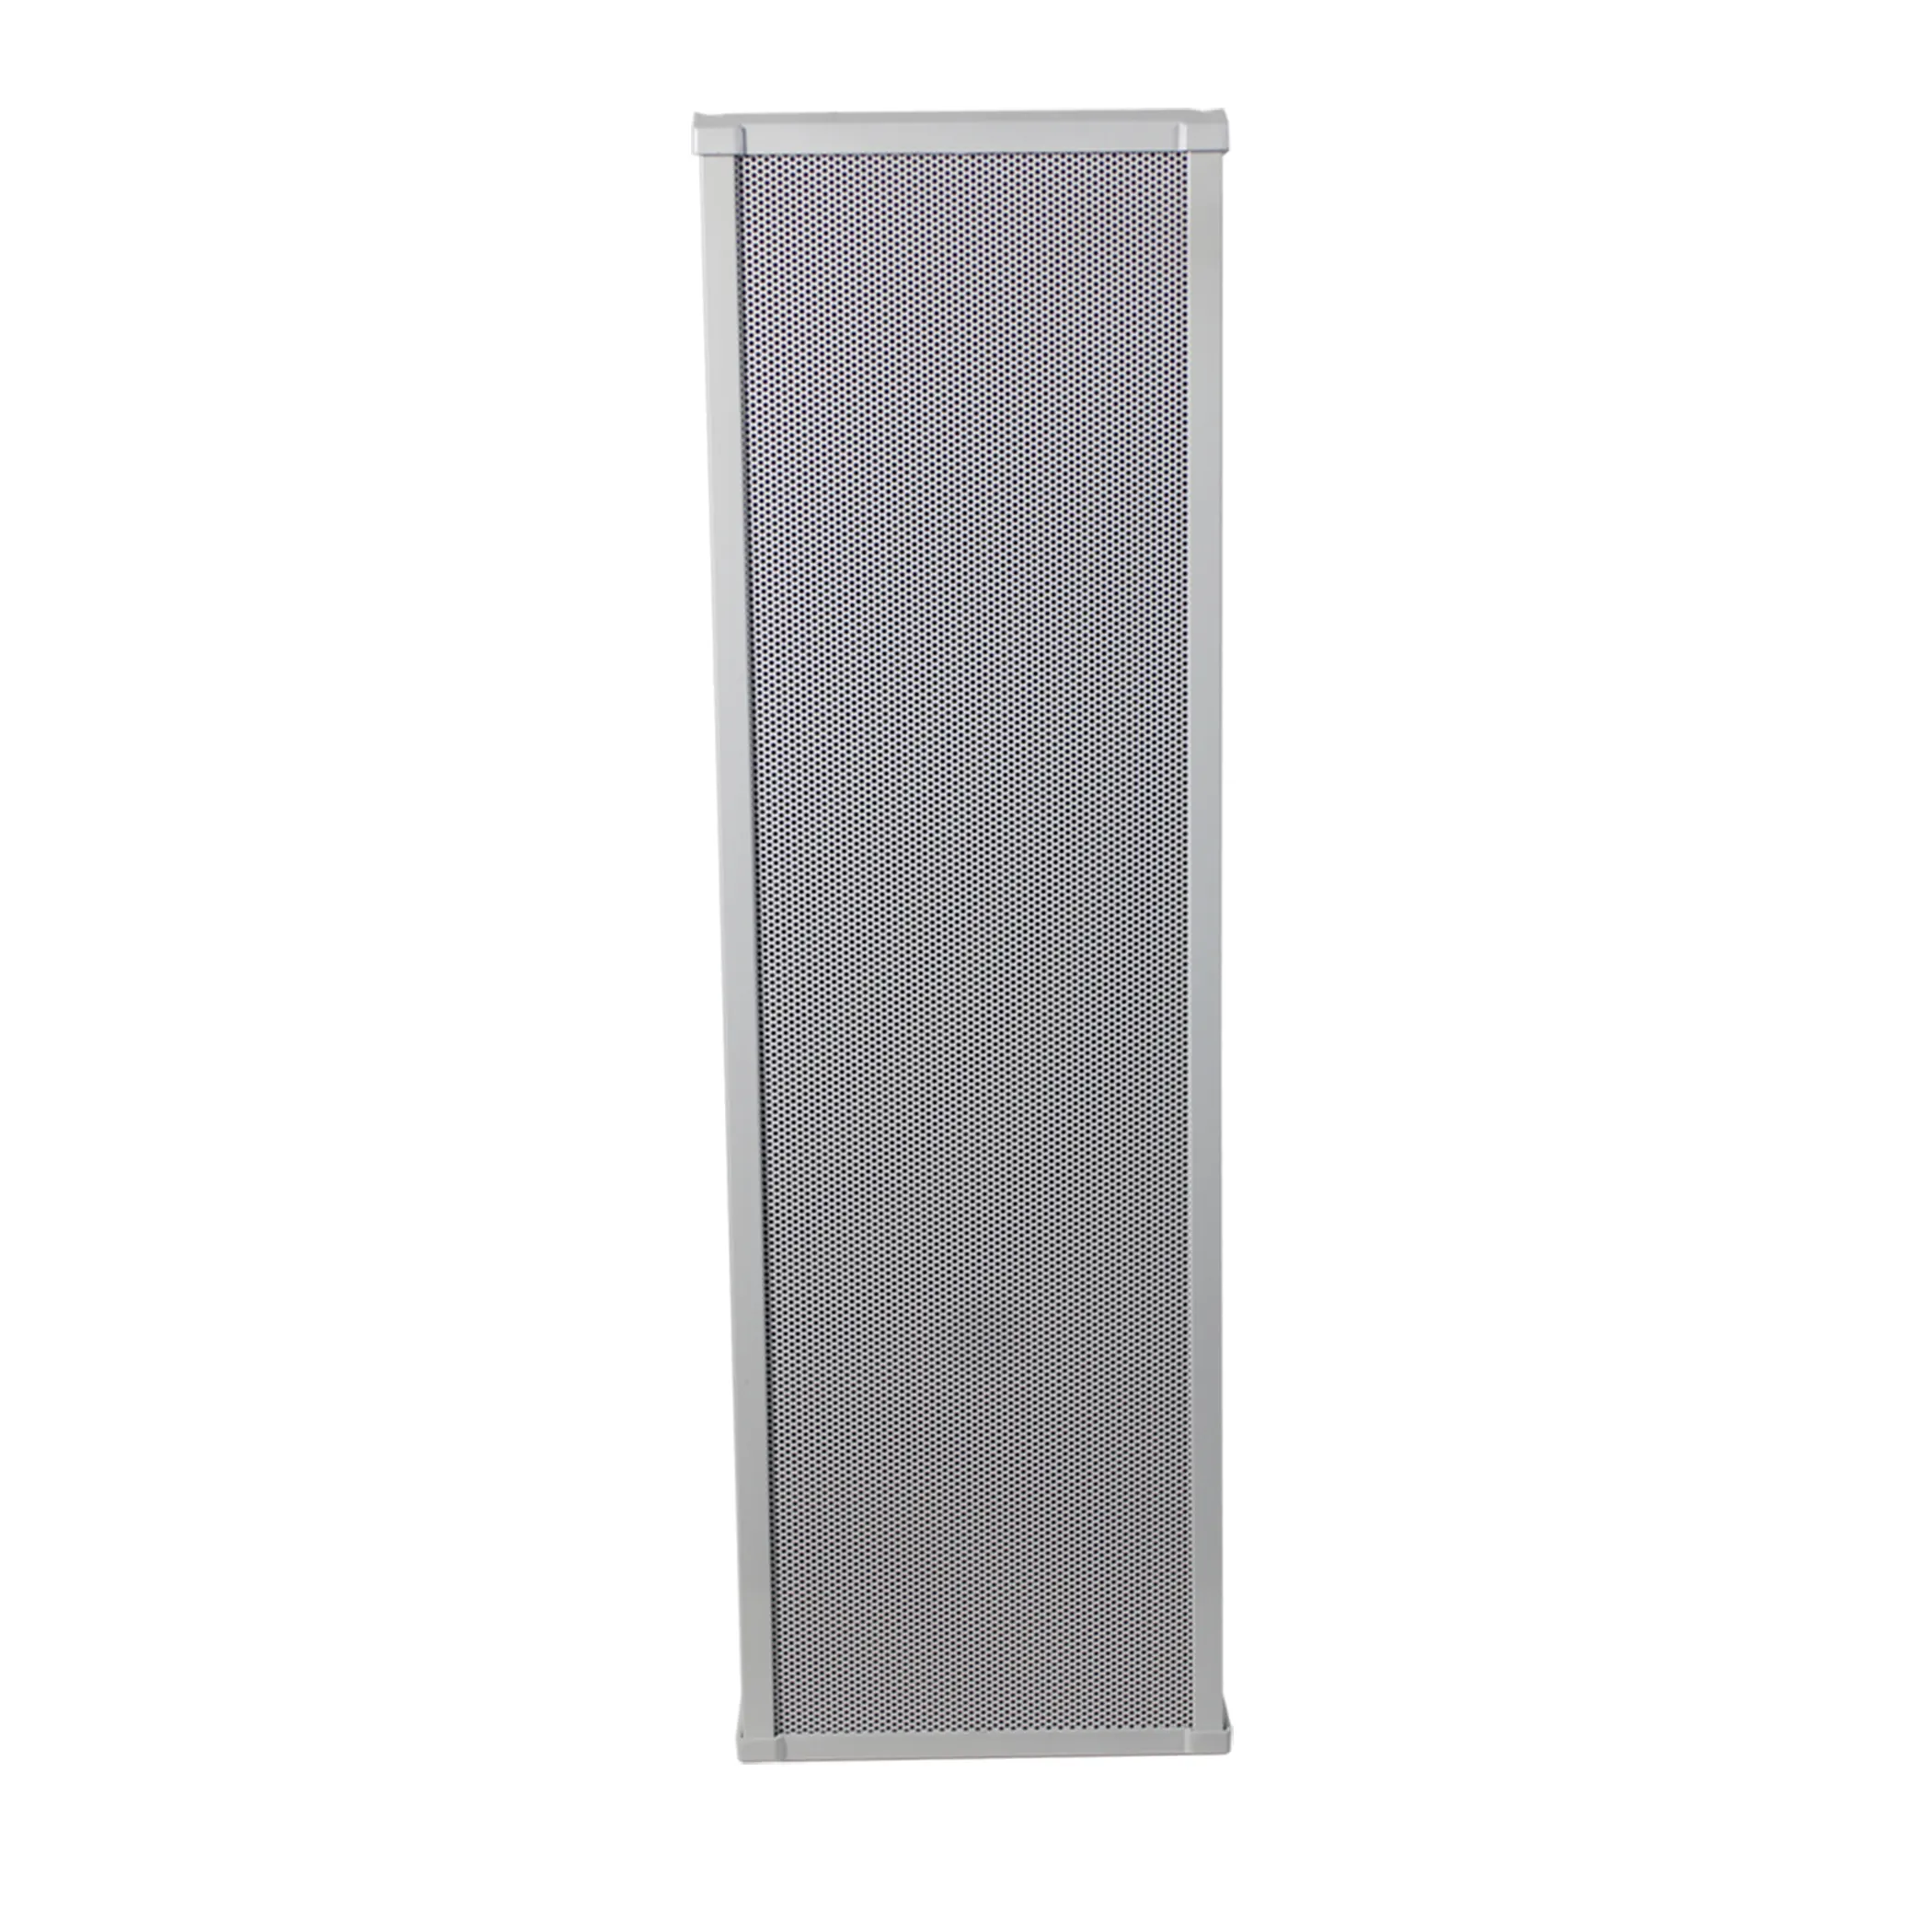 Sound Box Aluminium Lautsprecher Full Range 6 Zoll 20W Outdoor wasserdichter Säulen lautsprecher für Hintergrund musik und Paging